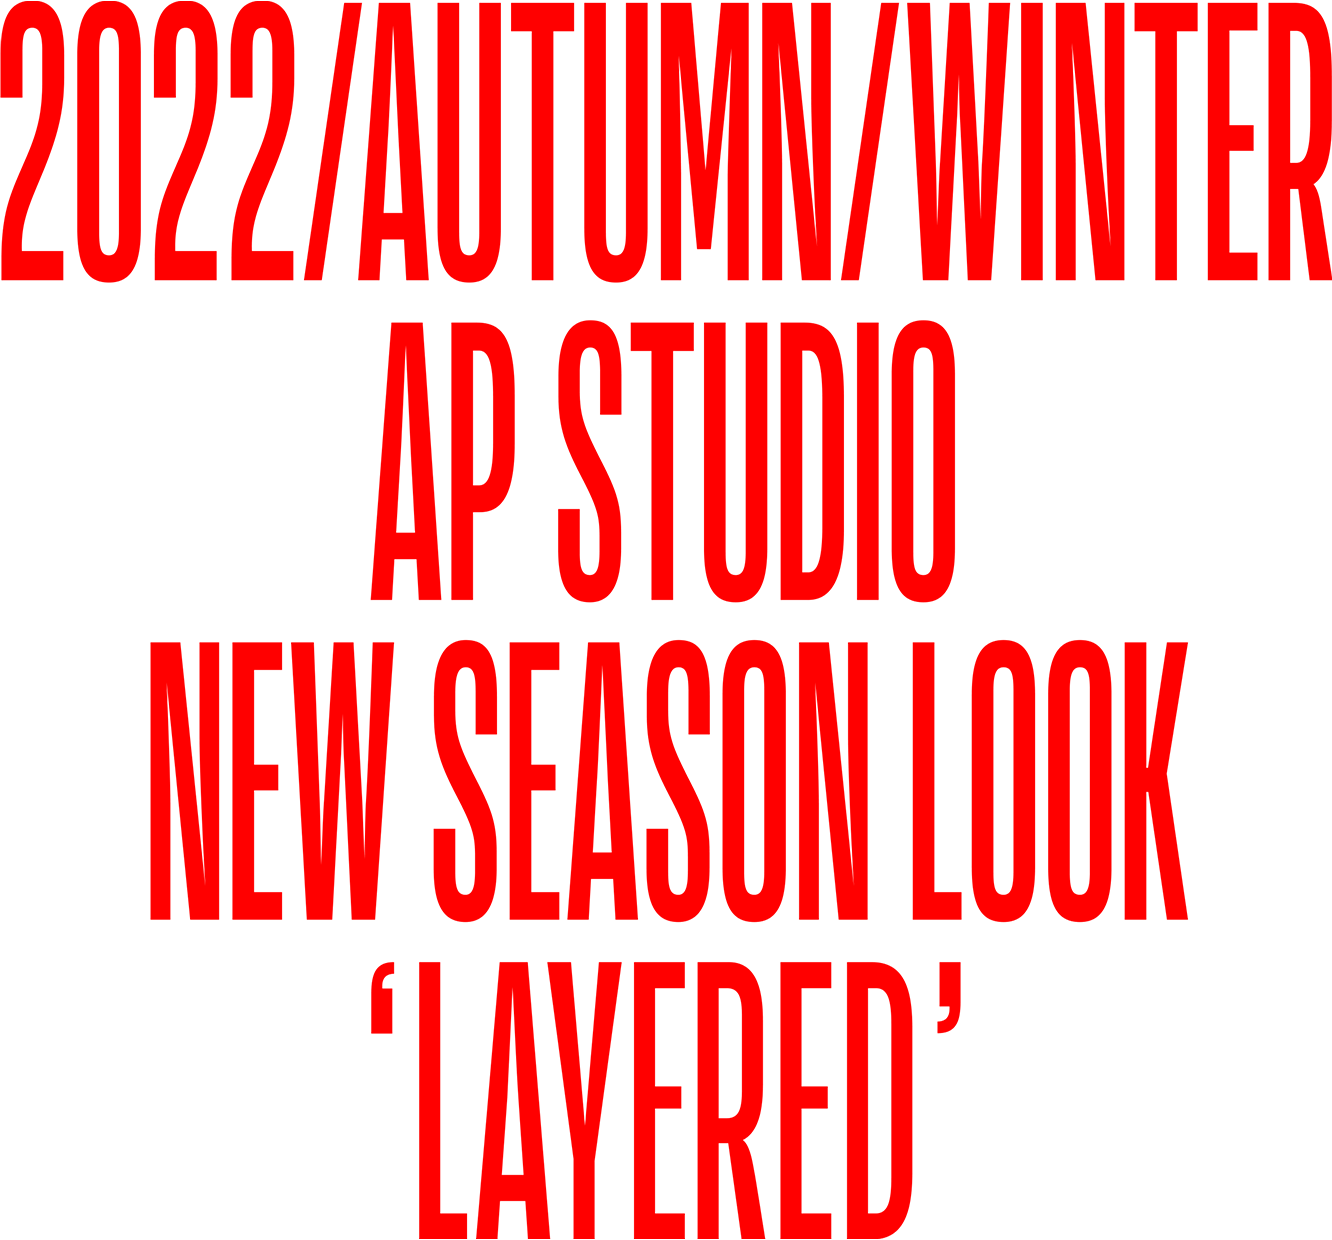 2022/AUTUMN/WINTER APSTUDIO NEW SEASON LOOK LAYERED